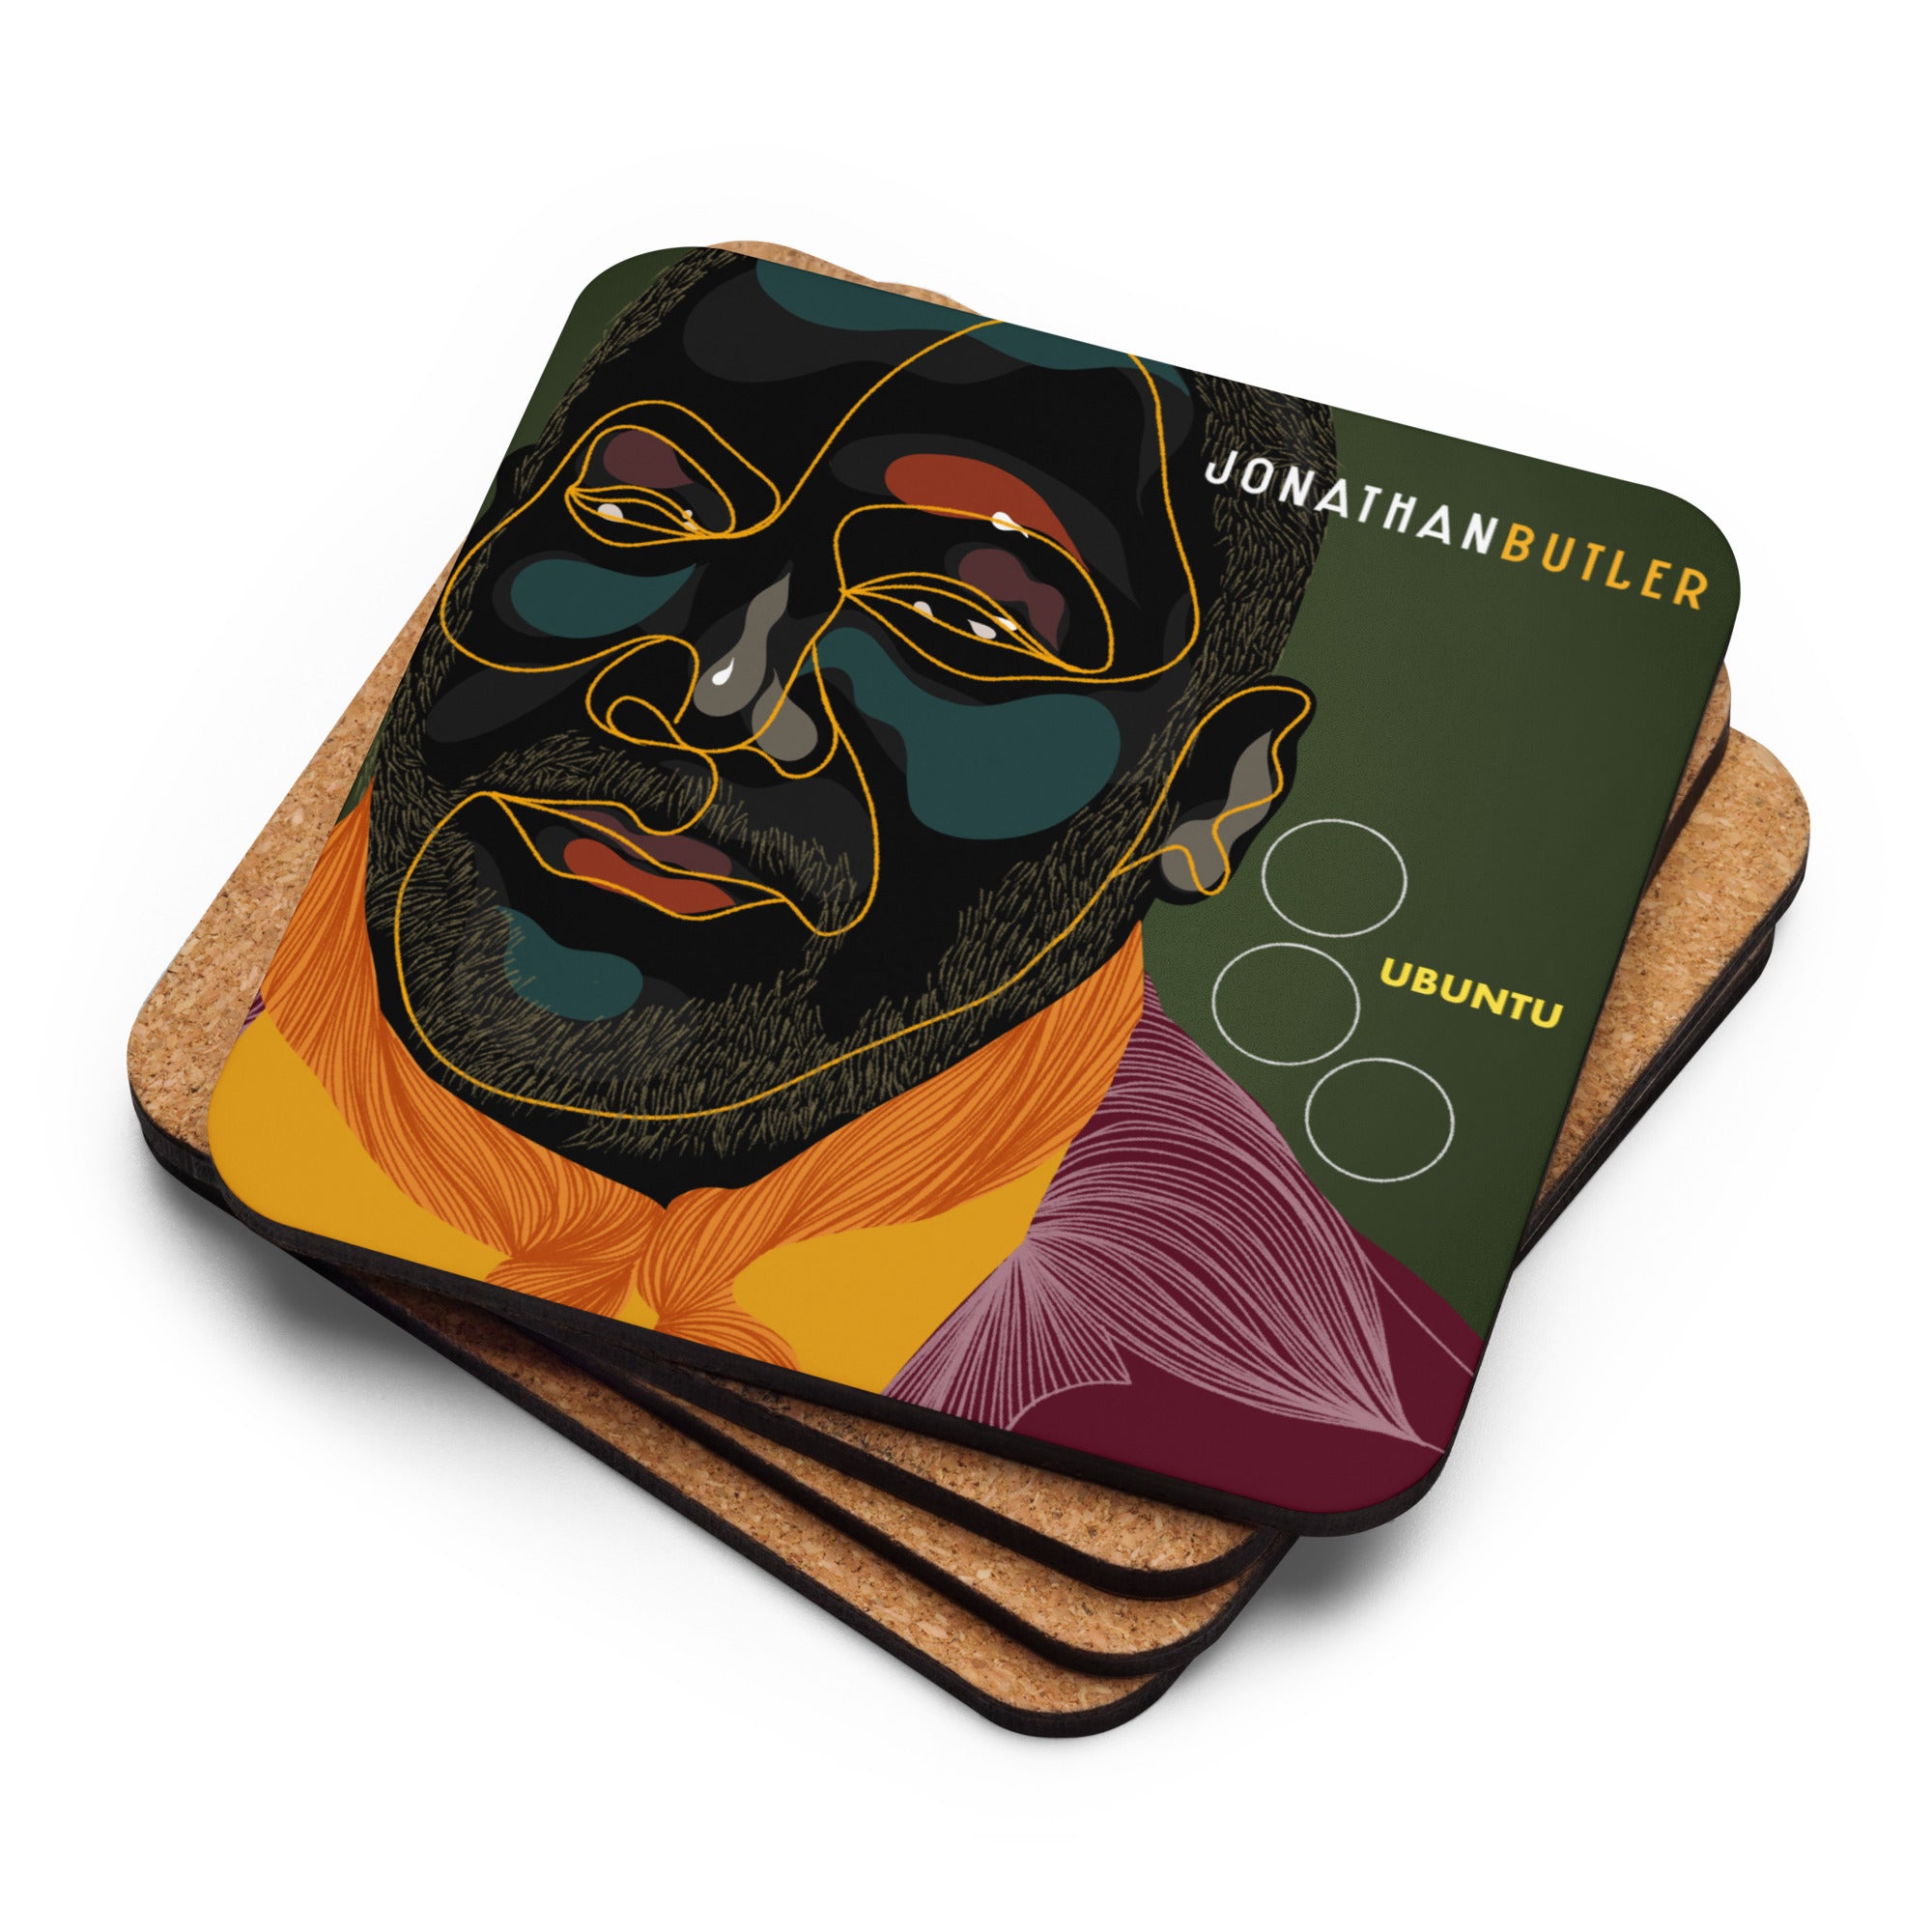 Ubuntu – Coaster